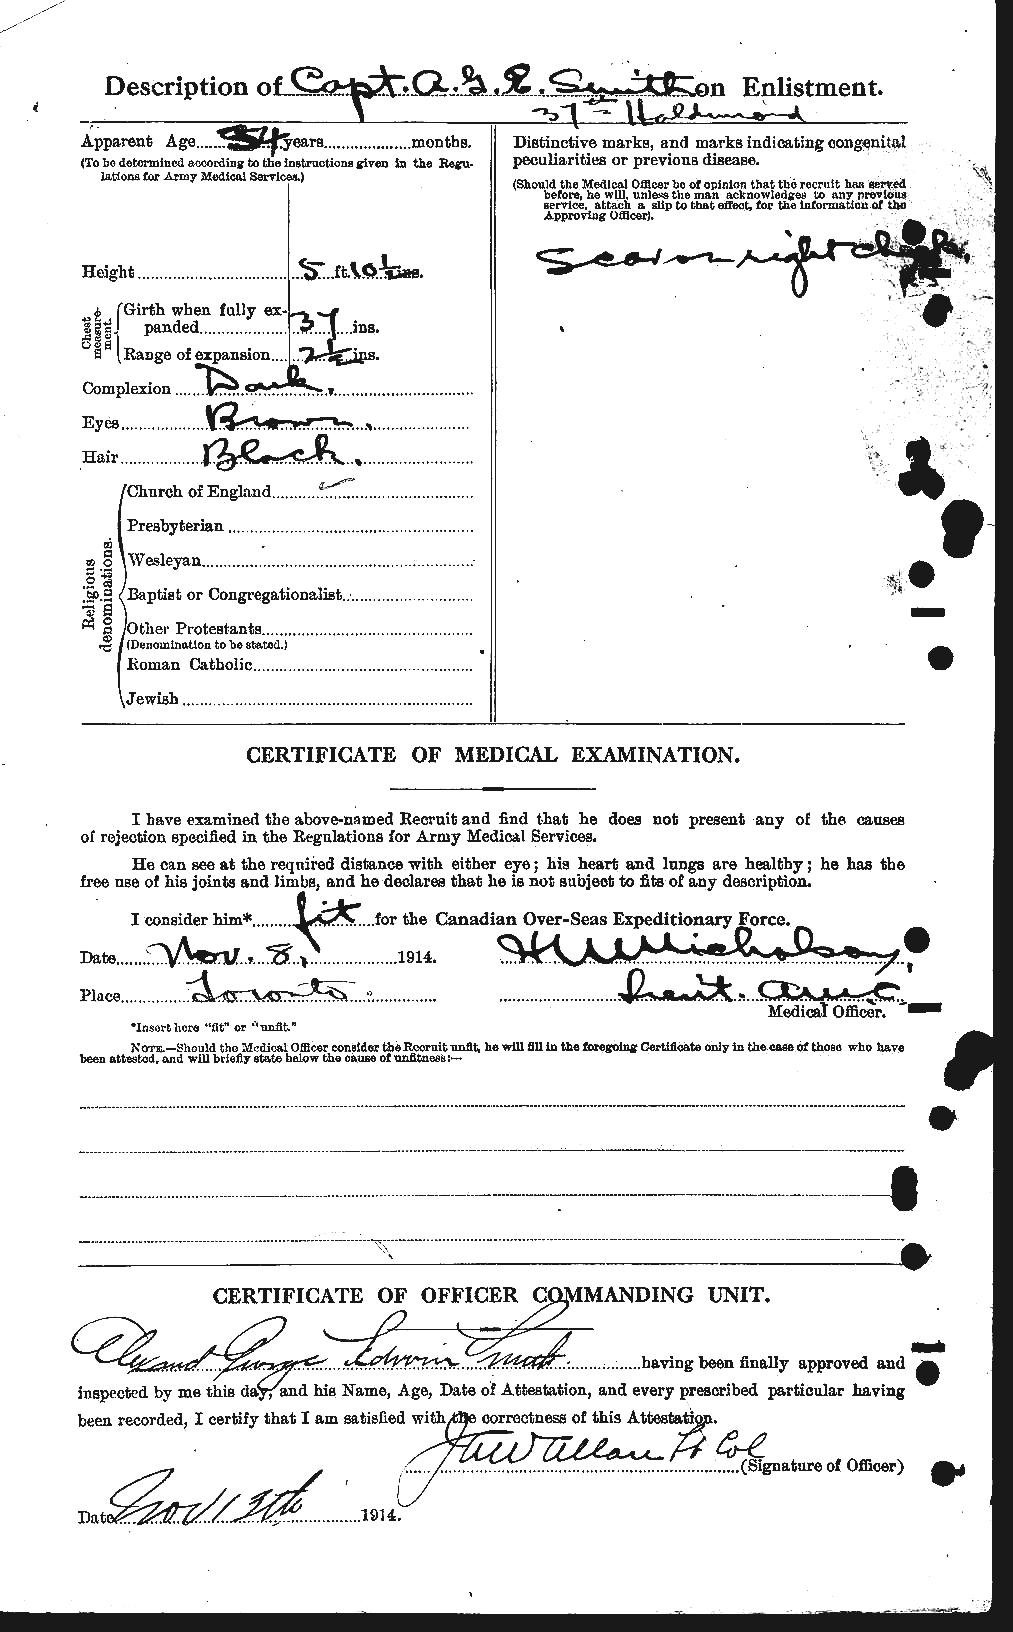 Dossiers du Personnel de la Première Guerre mondiale - CEC 622015b